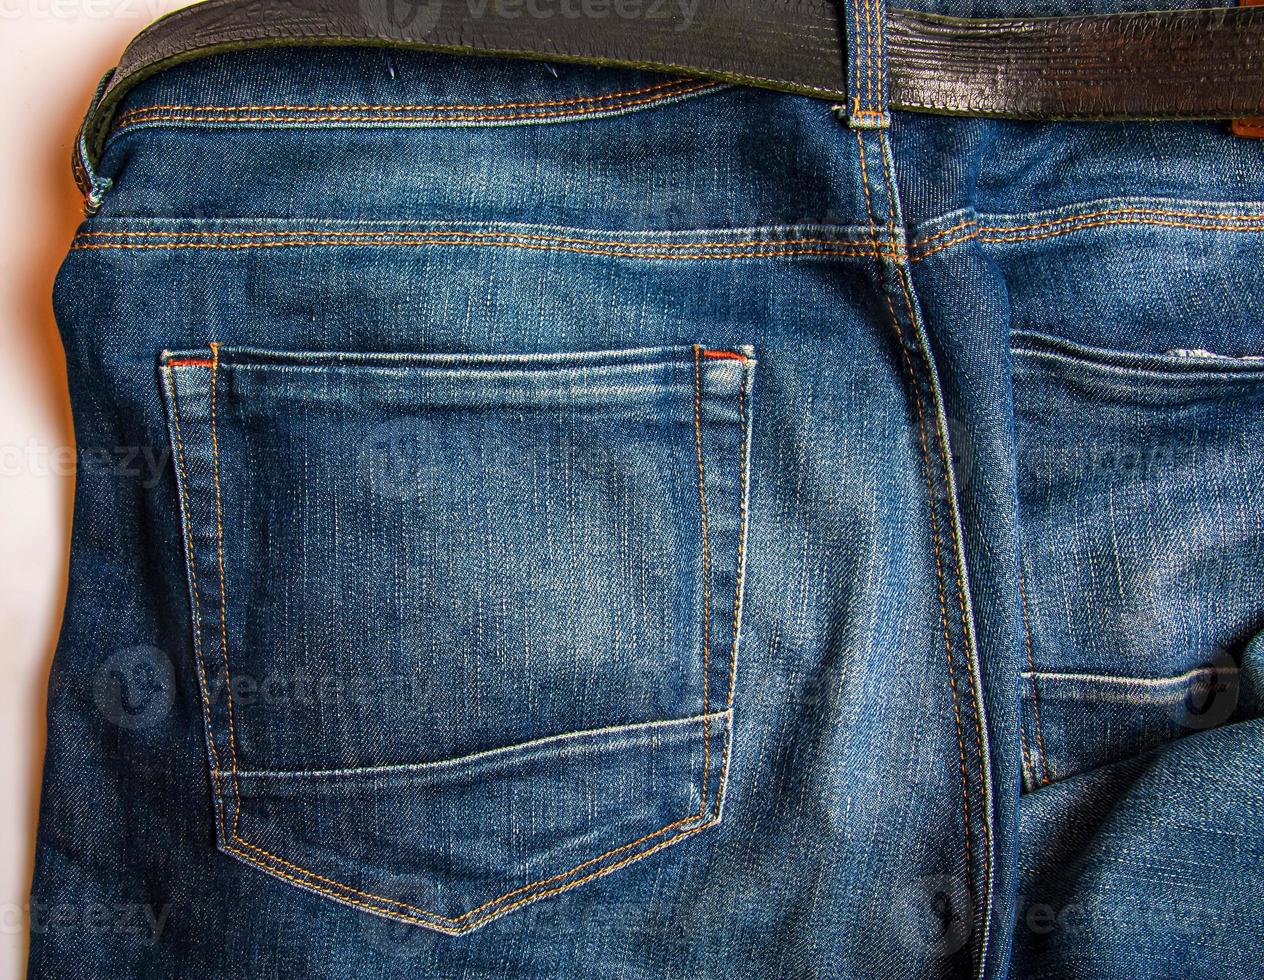 jeans desgastados con - diseño de de detalles. 15771064 Foto de stock en Vecteezy